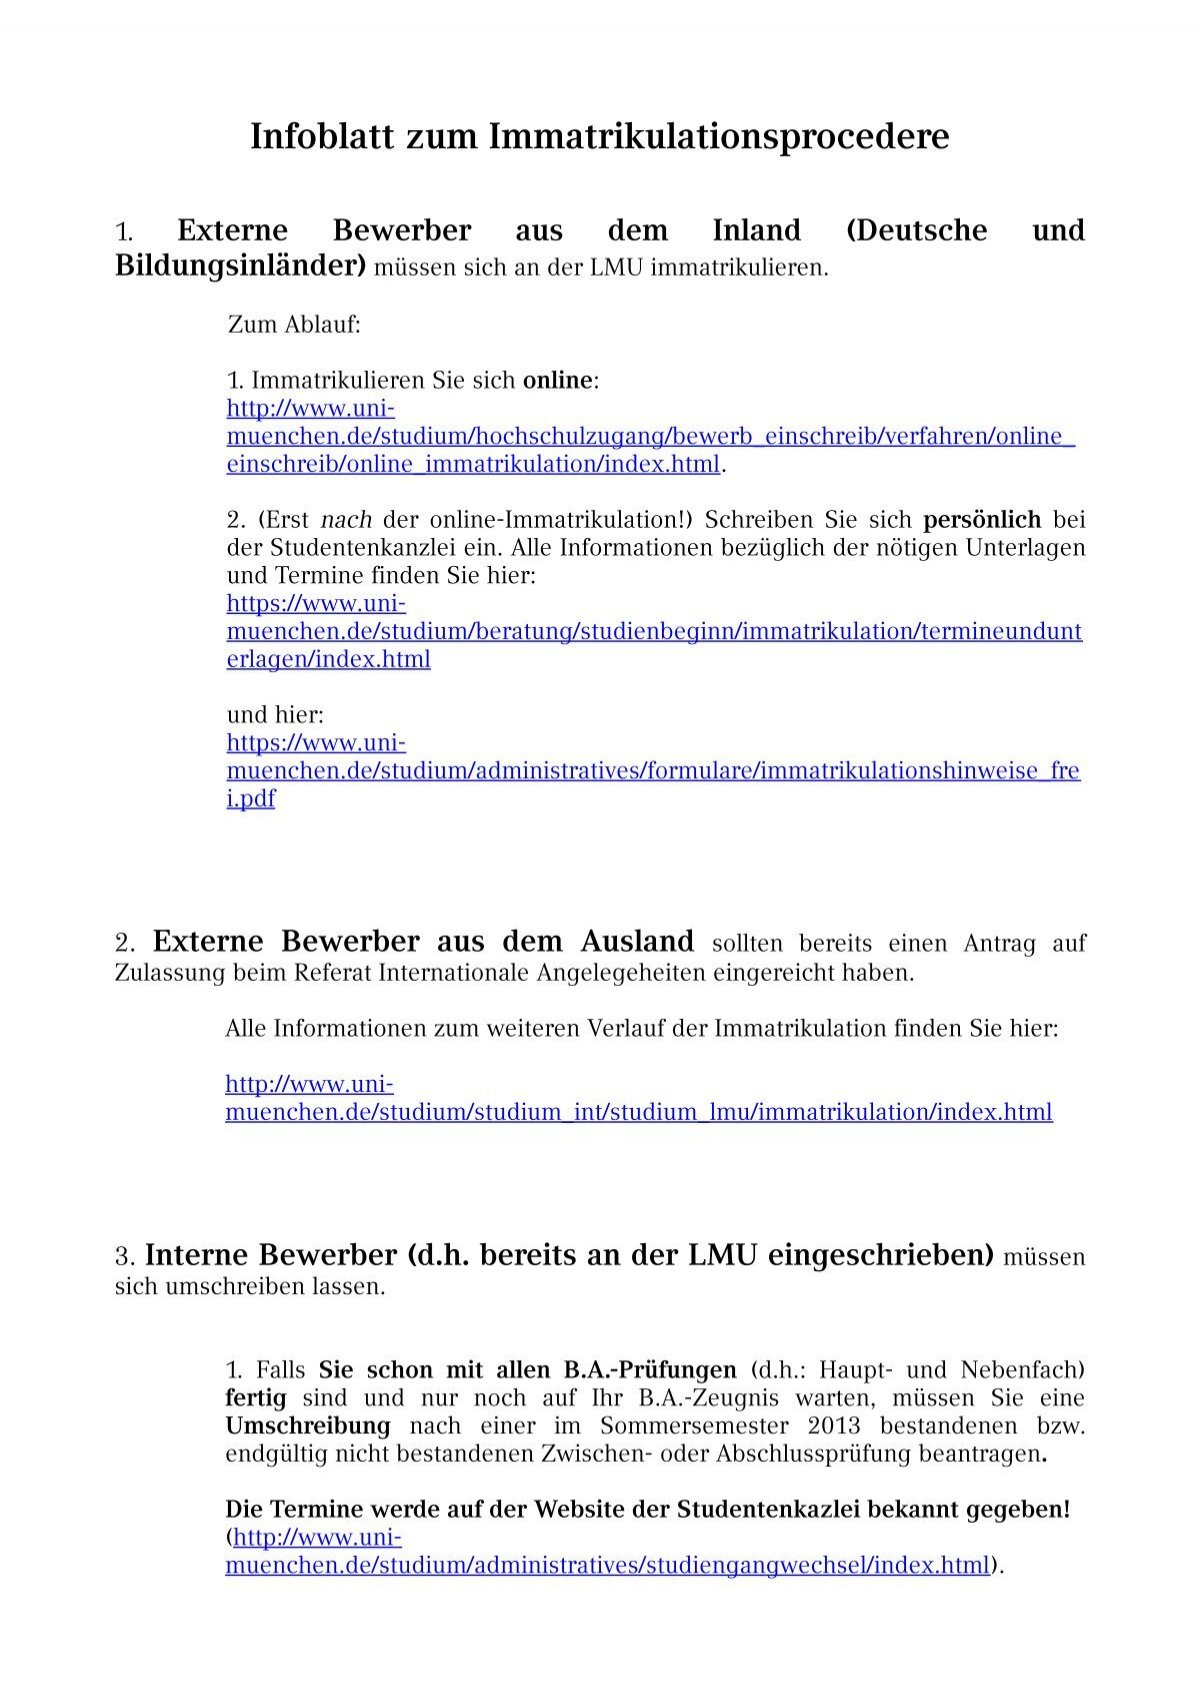 Infoblatt Zum Immatrikulationsprocedere Lmu